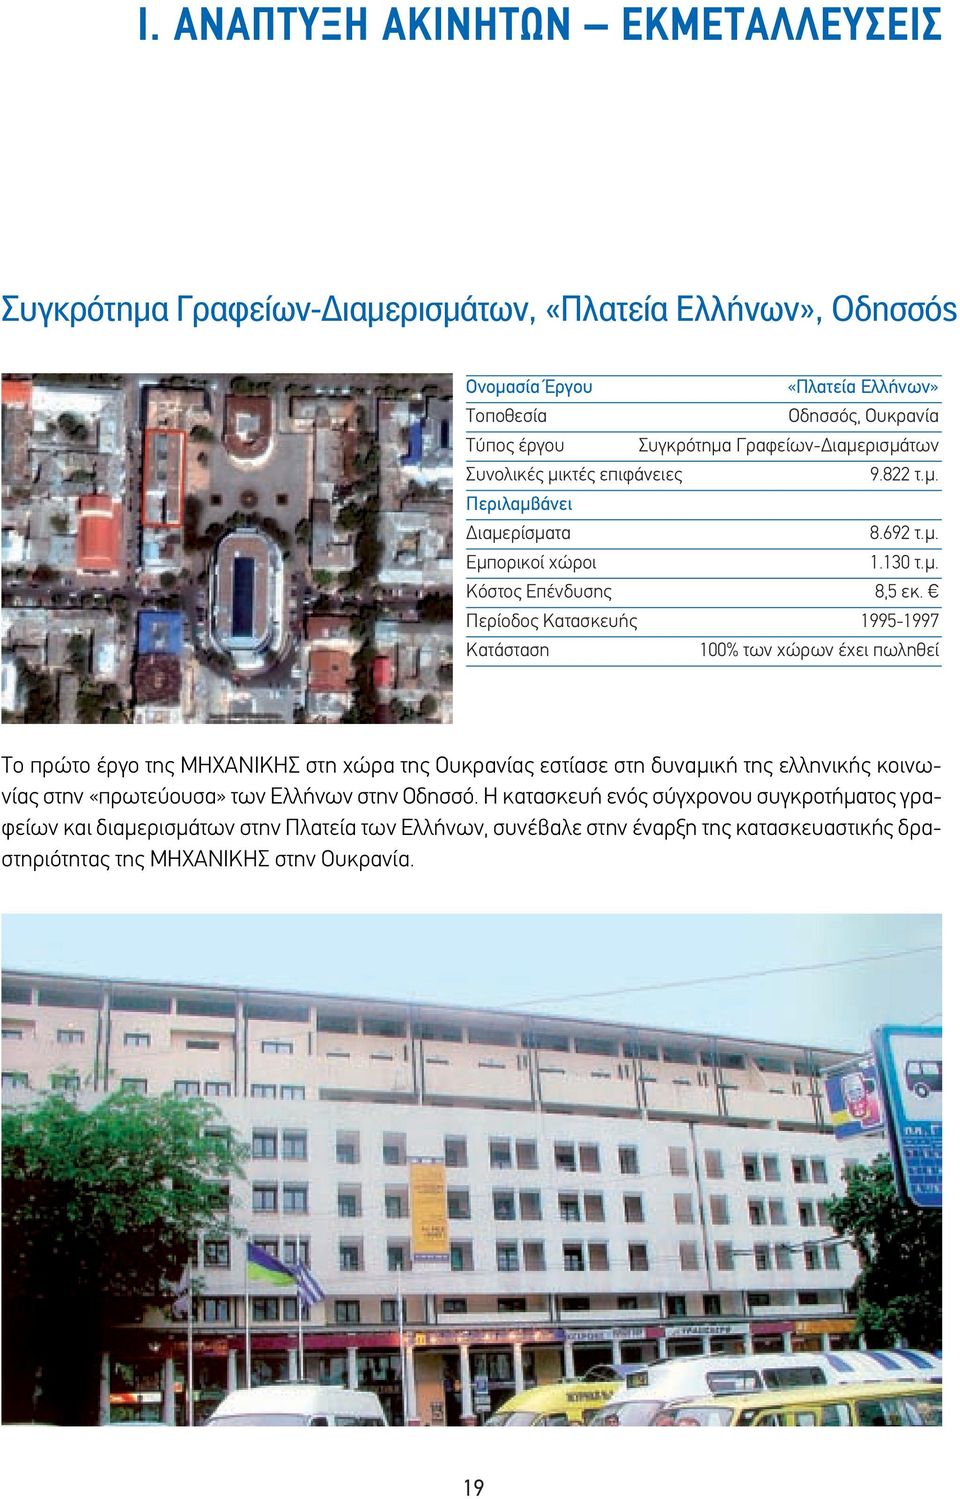 Περίοδος Κατασκευής 1995-1997 Κατάσταση 100% των χώρων έχει πωληθεί Το πρώτο έργο της ΜΗΧΑΝΙΚΗΣ στη χώρα της Ουκρανίας εστίασε στη δυναμική της ελληνικής κοινωνίας στην